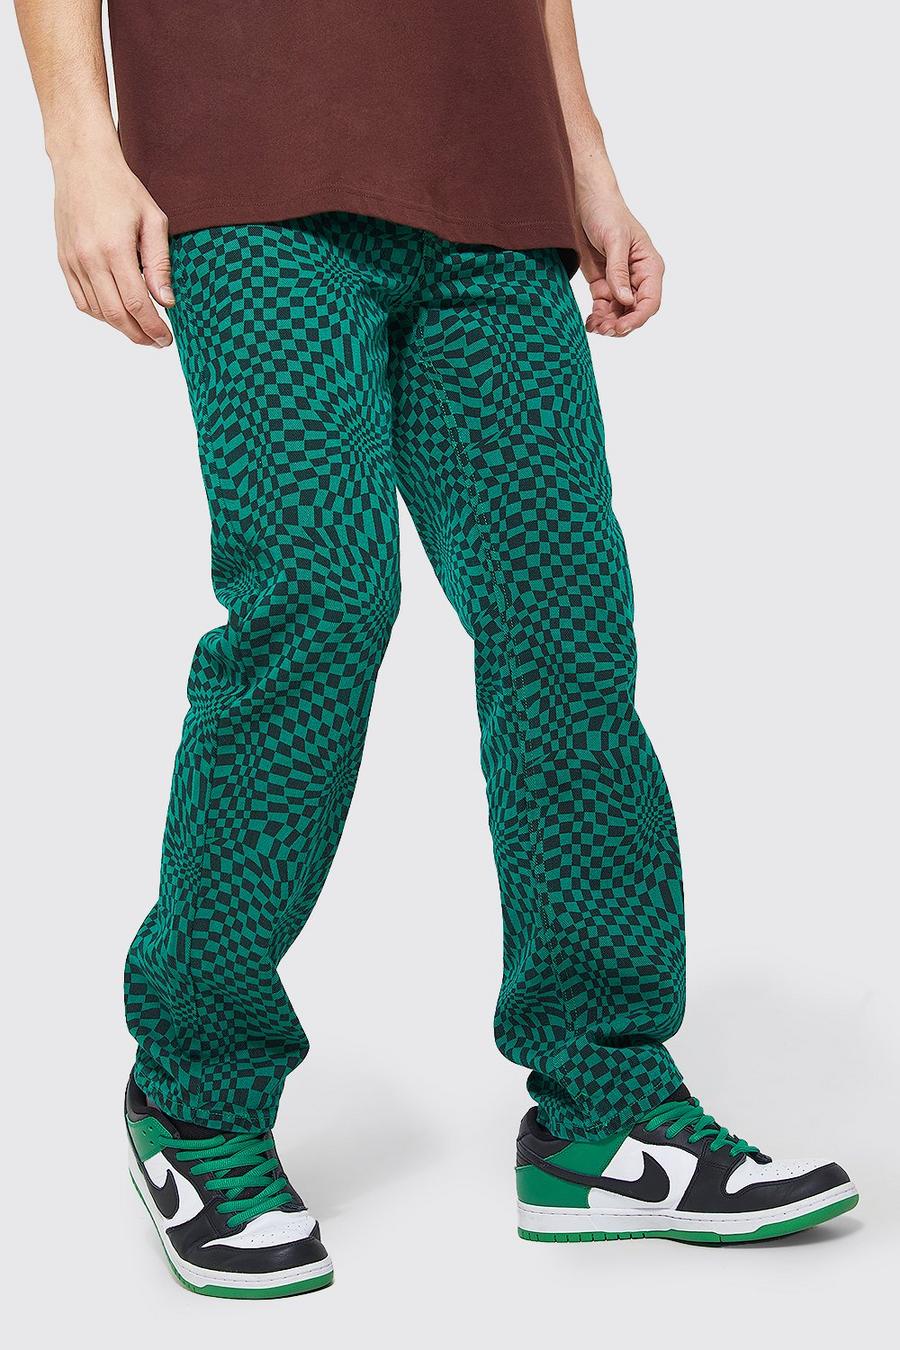 Lockere Jeans mit Schachbrett-Print, Green vert